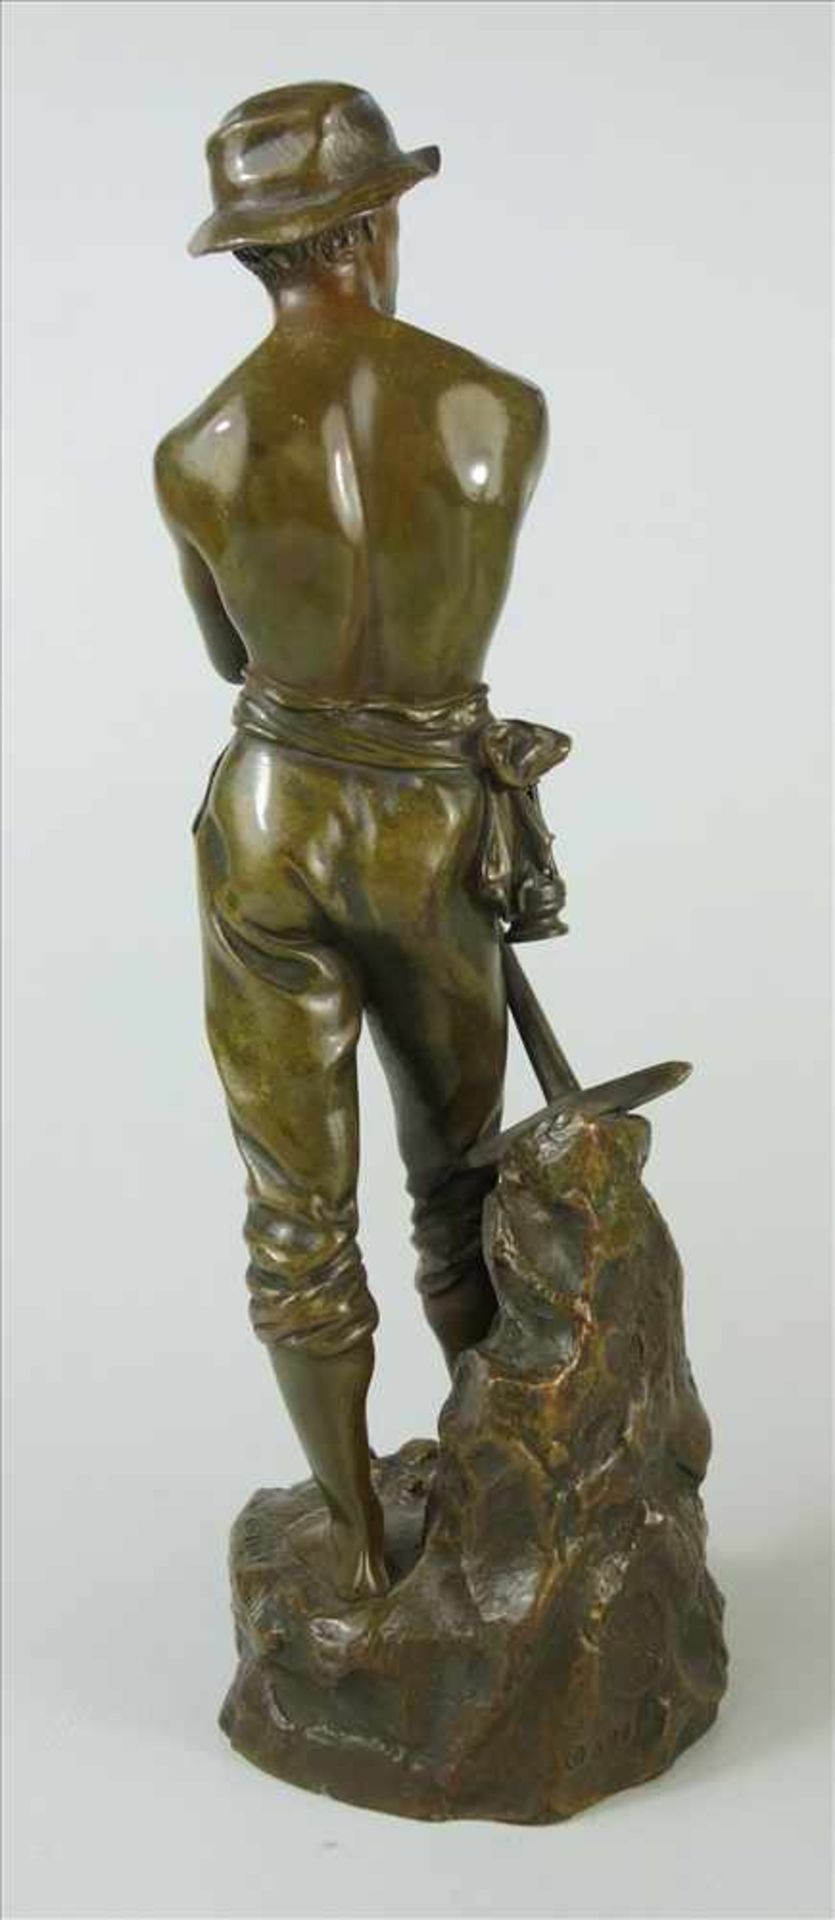 Charles Octave Levy (1820-1899 Paris) Le Mineur, um 1900, Bronze, stehender Bergbarbeiter mit - Bild 2 aus 4